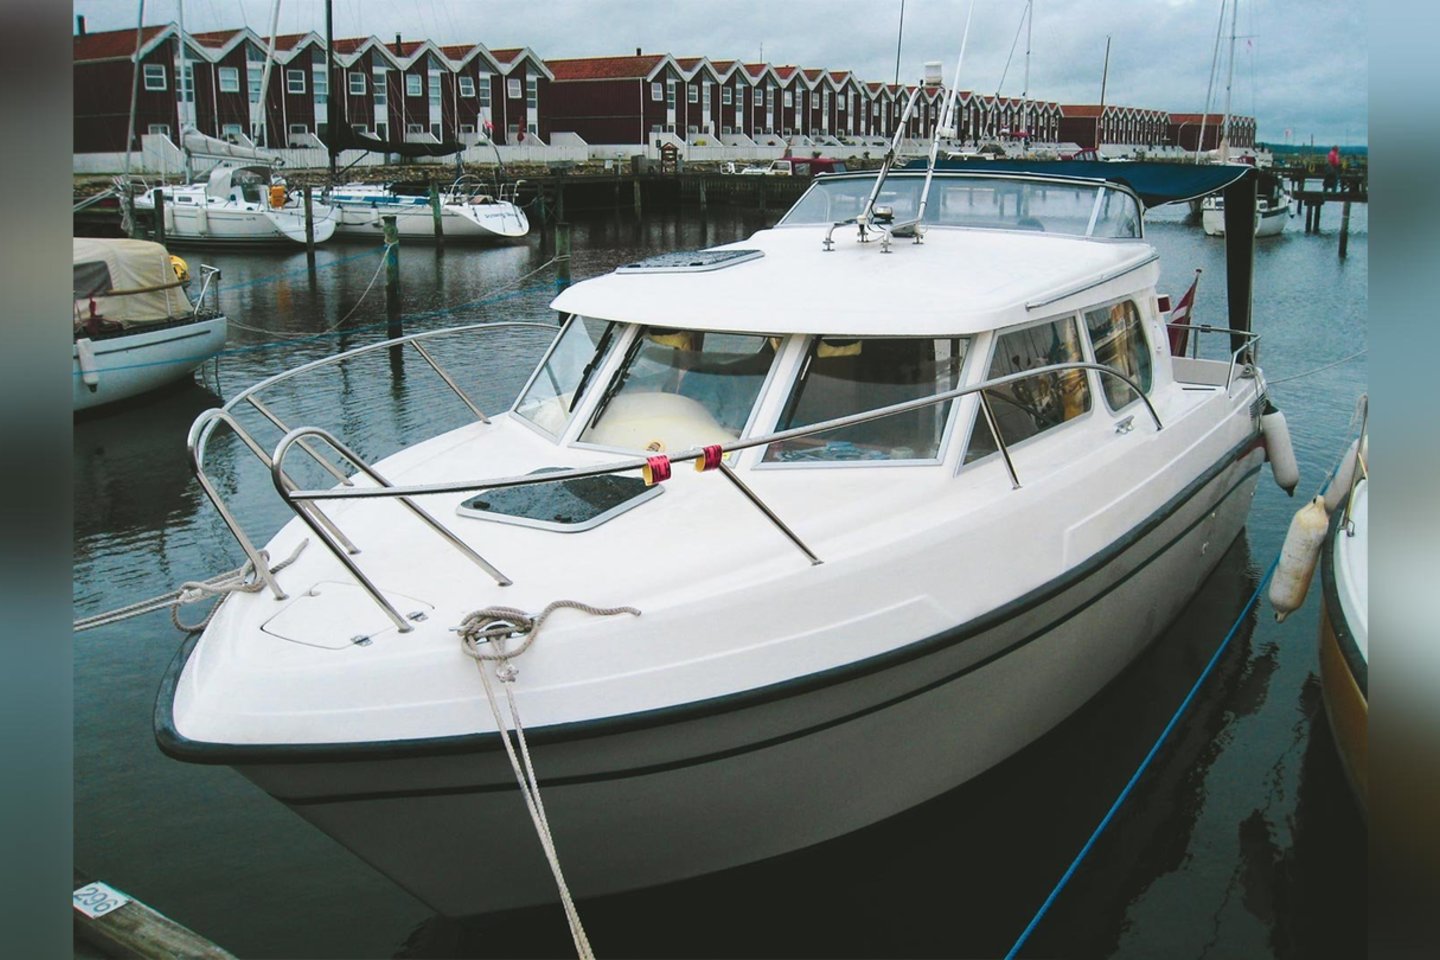 Lietuvos įmonės „Navis Pro“ pirmas pagamintas profesionalios žvejybos laivas „800 Fisher“ jau išvežtas į Norvegiją.